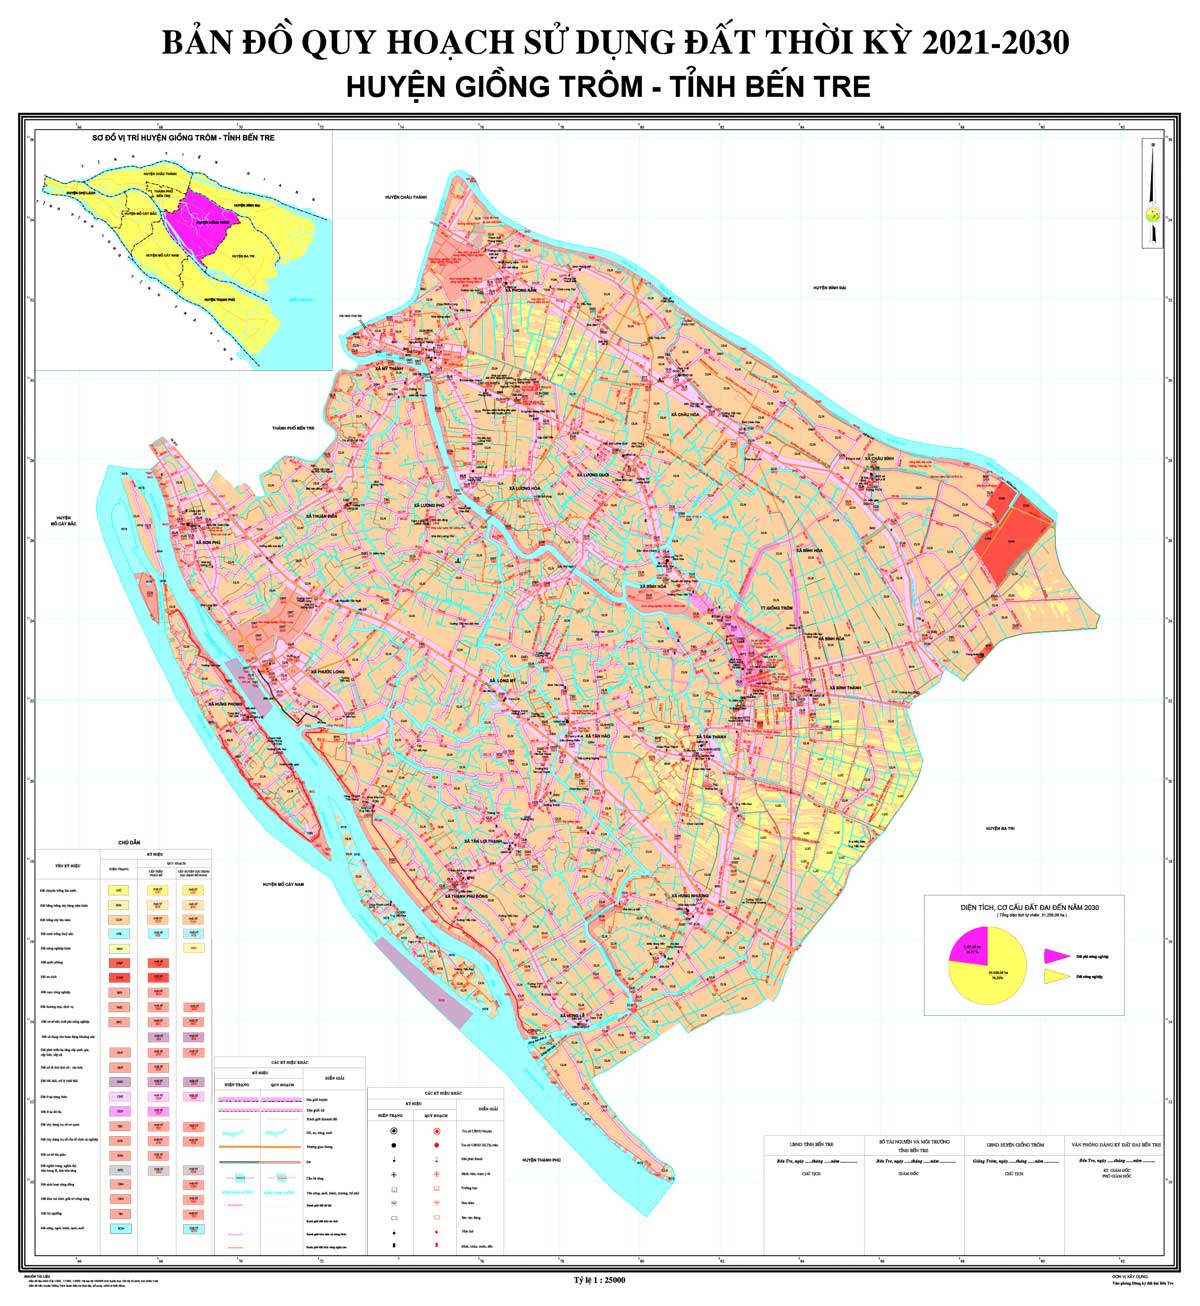 Bản đồ QHSDĐ huyện Giồng Trôm đến năm 2030